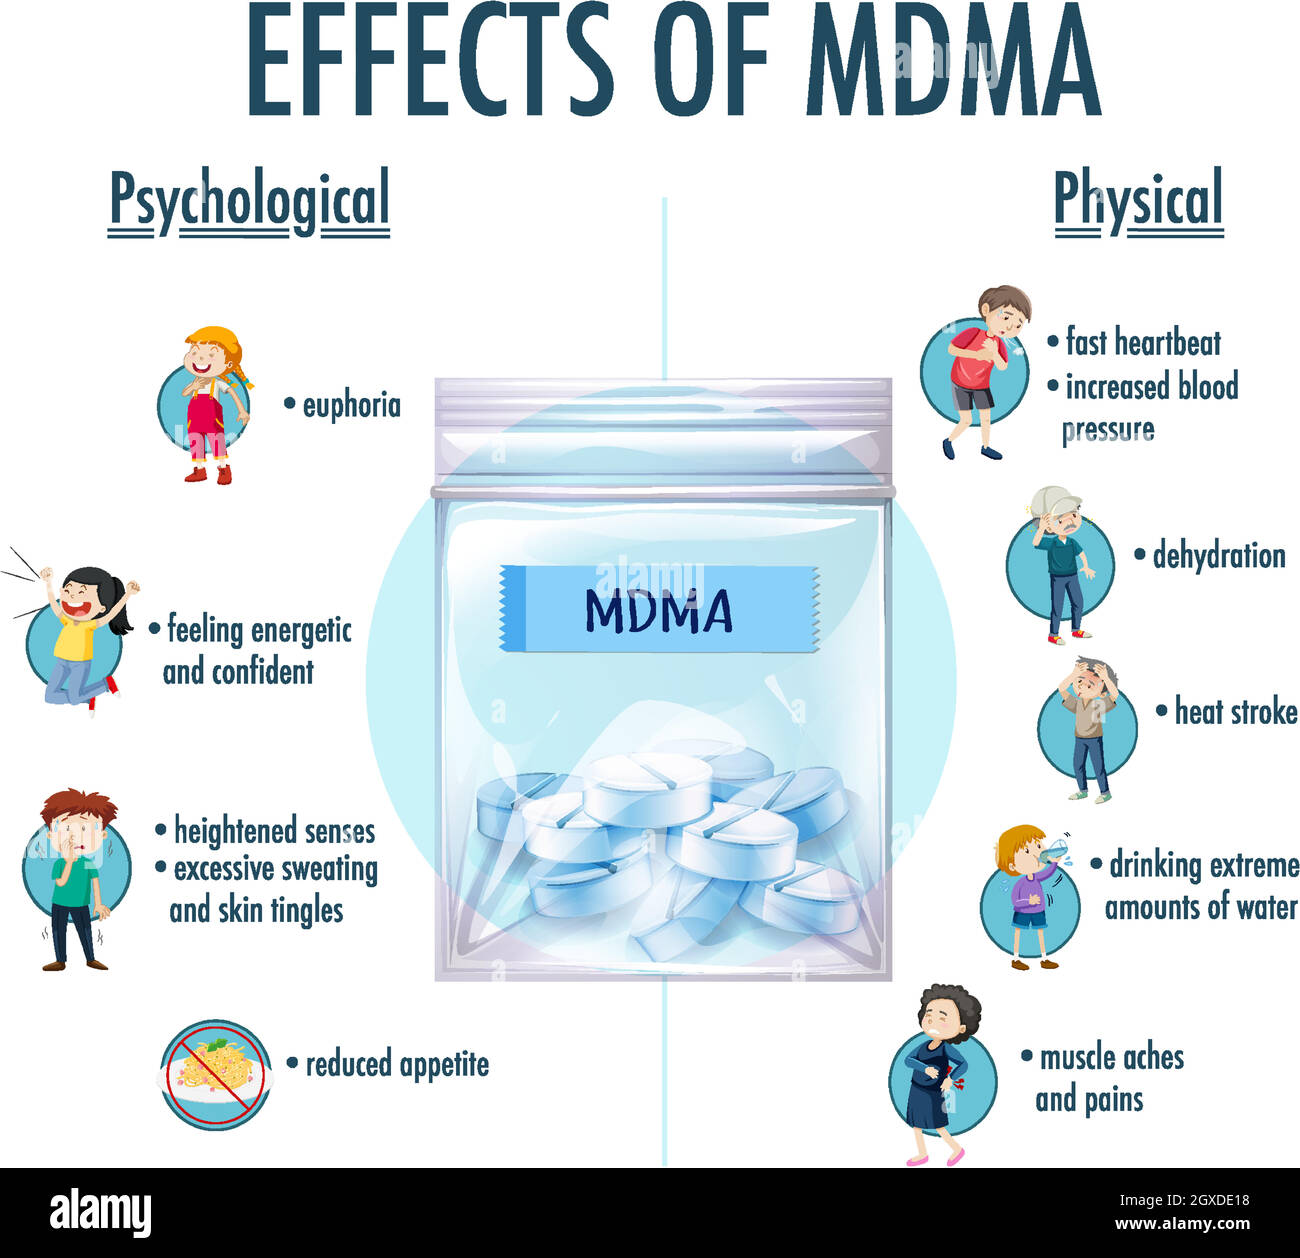 Infographie sur les effets de la MDMA (ecstasy) Illustration de Vecteur